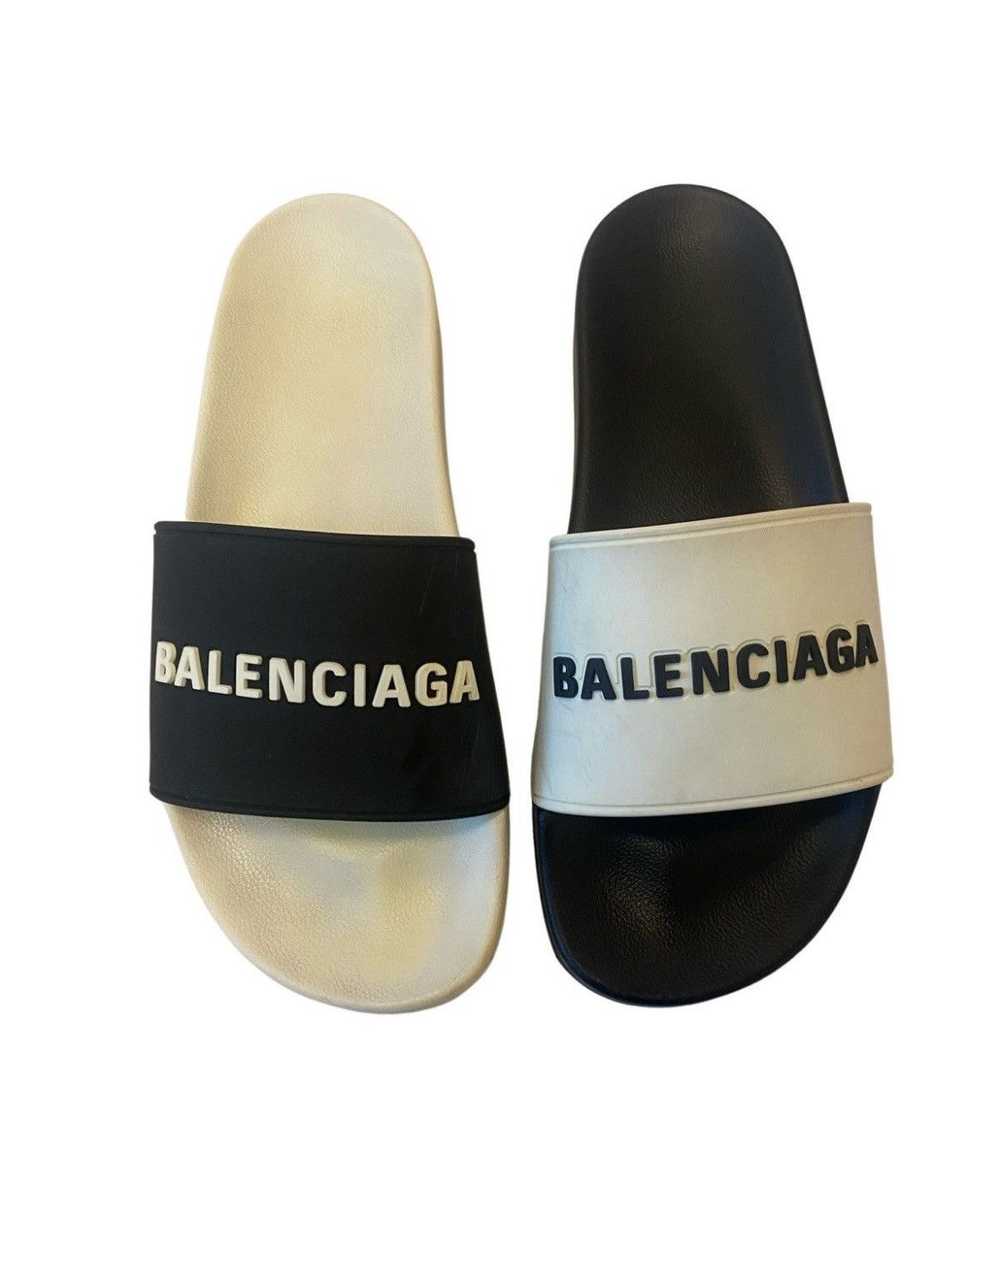 Balenciaga BALENCIAGA MISMATCH POOL SLIDES - image 1